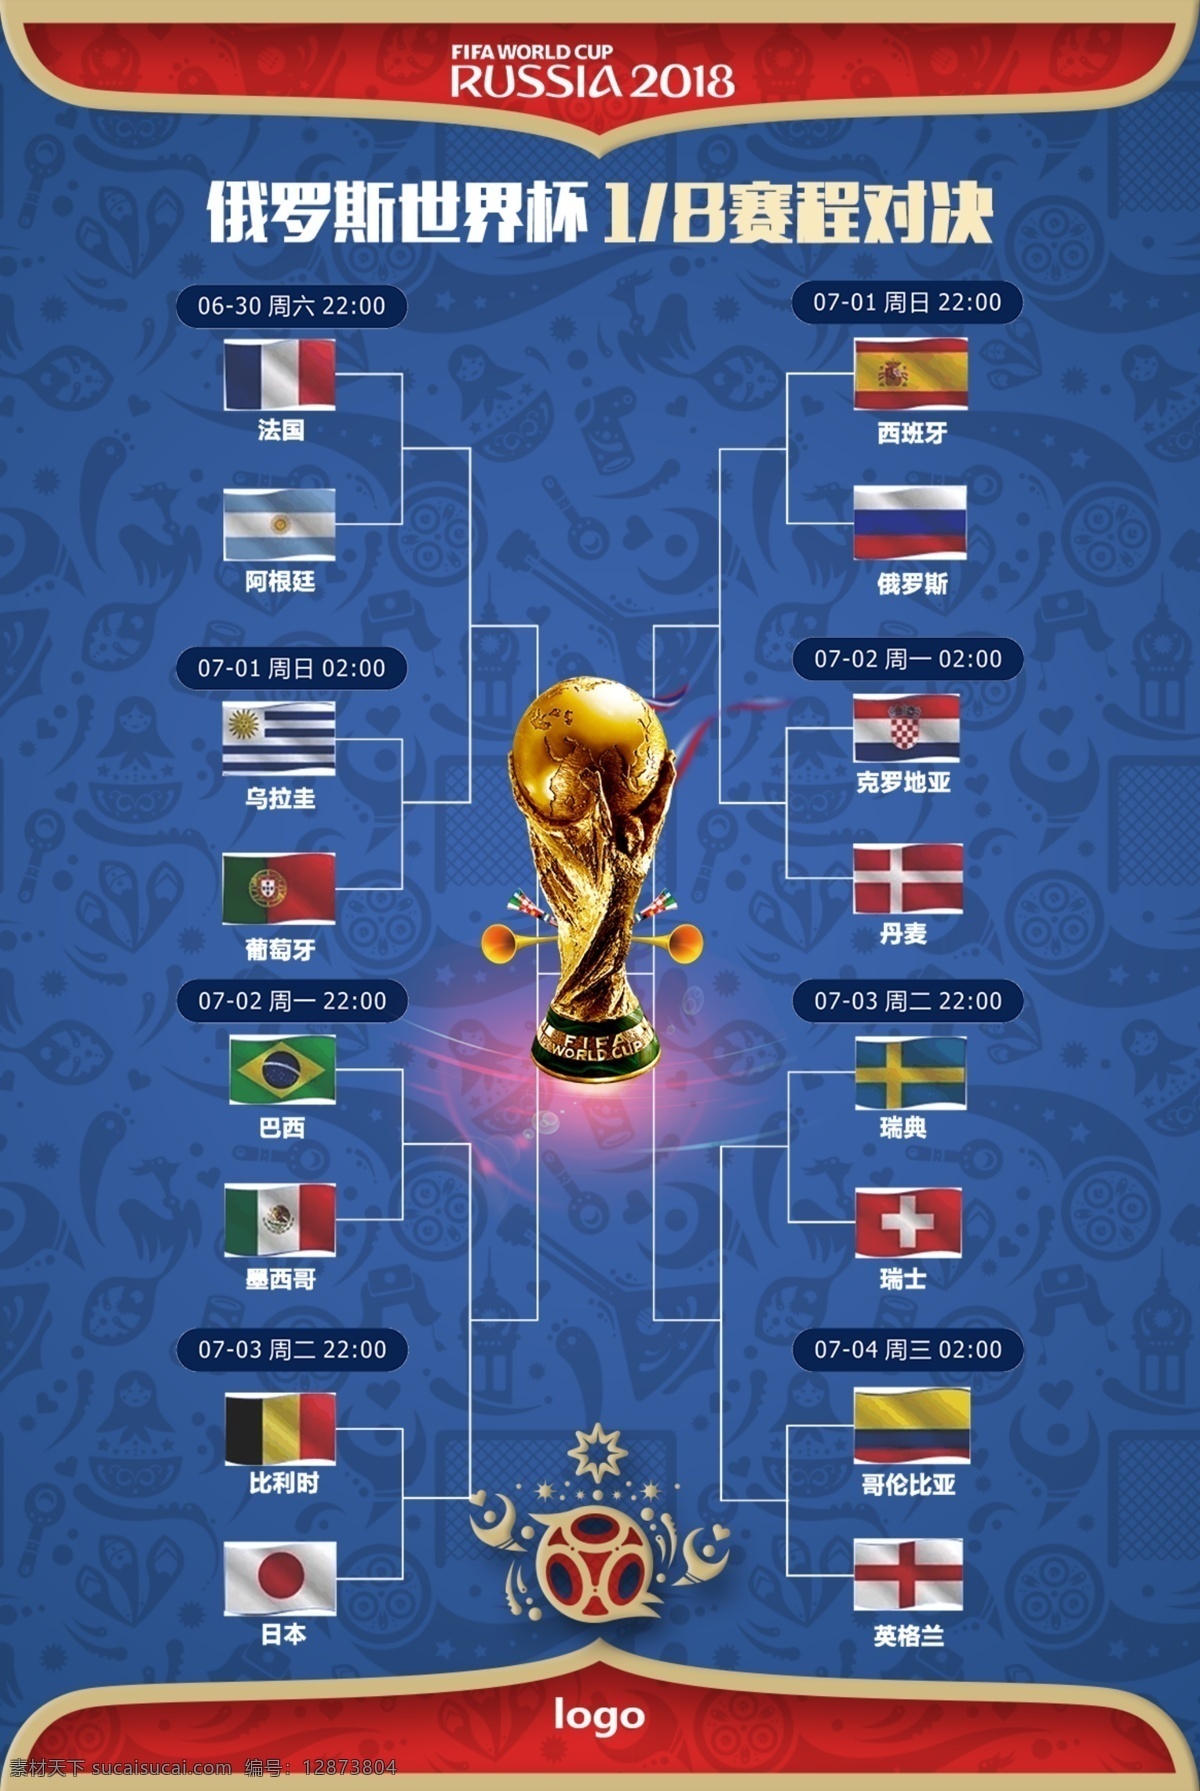 世界杯 赛程 图 海报 年 俄罗斯 体育 竞技 2018 世界杯18